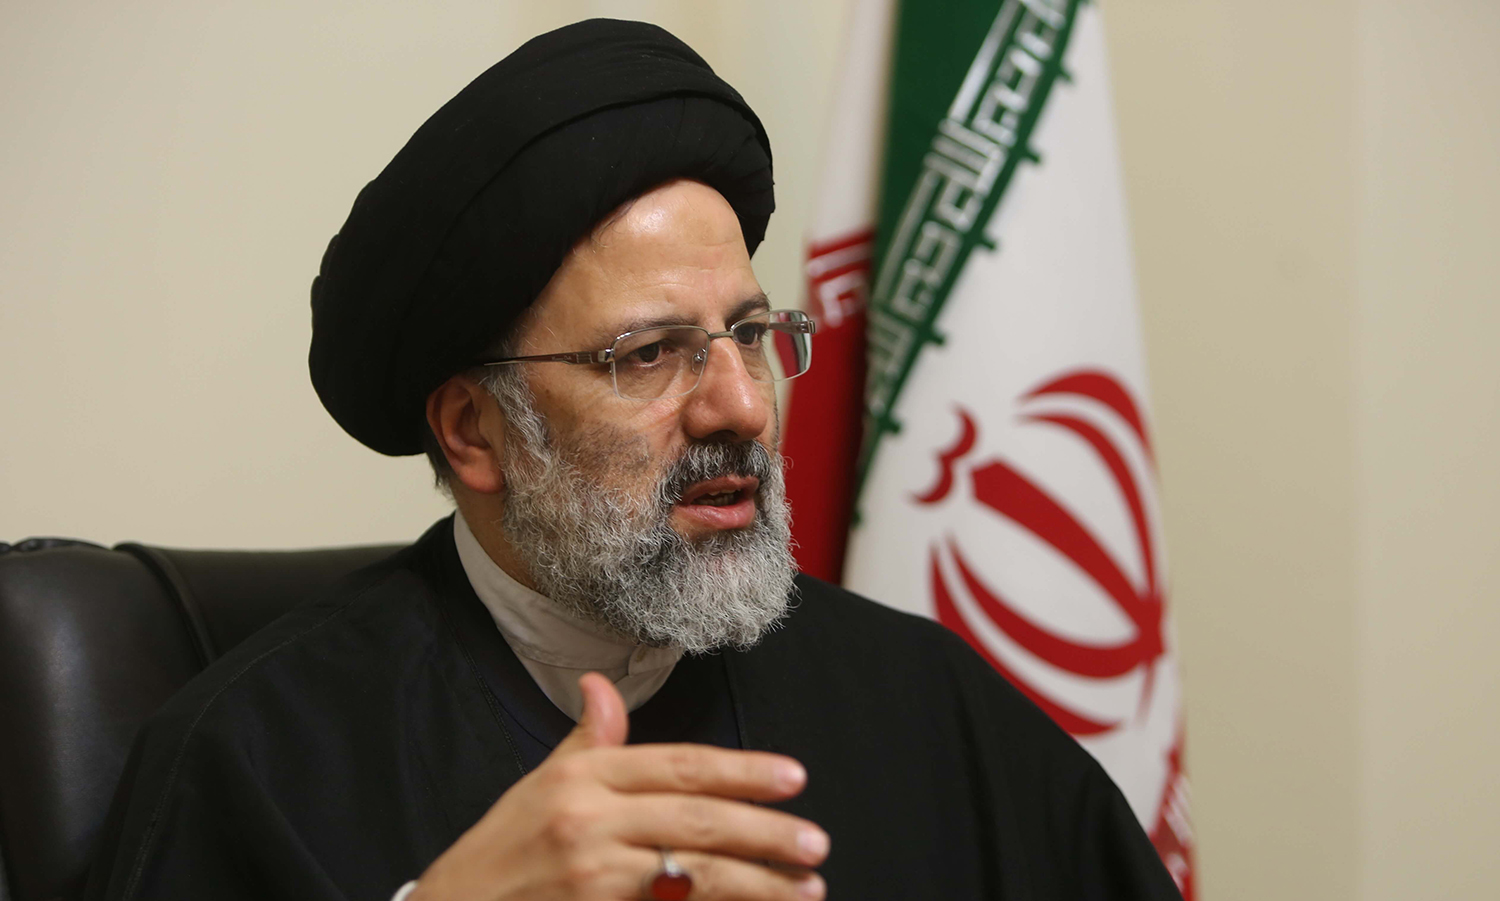 ابراهيم رئيسي| الرئيس الإيراني الجديد يتصدر محركات البحث بعد فوزه فمن هو؟ (صور) 1